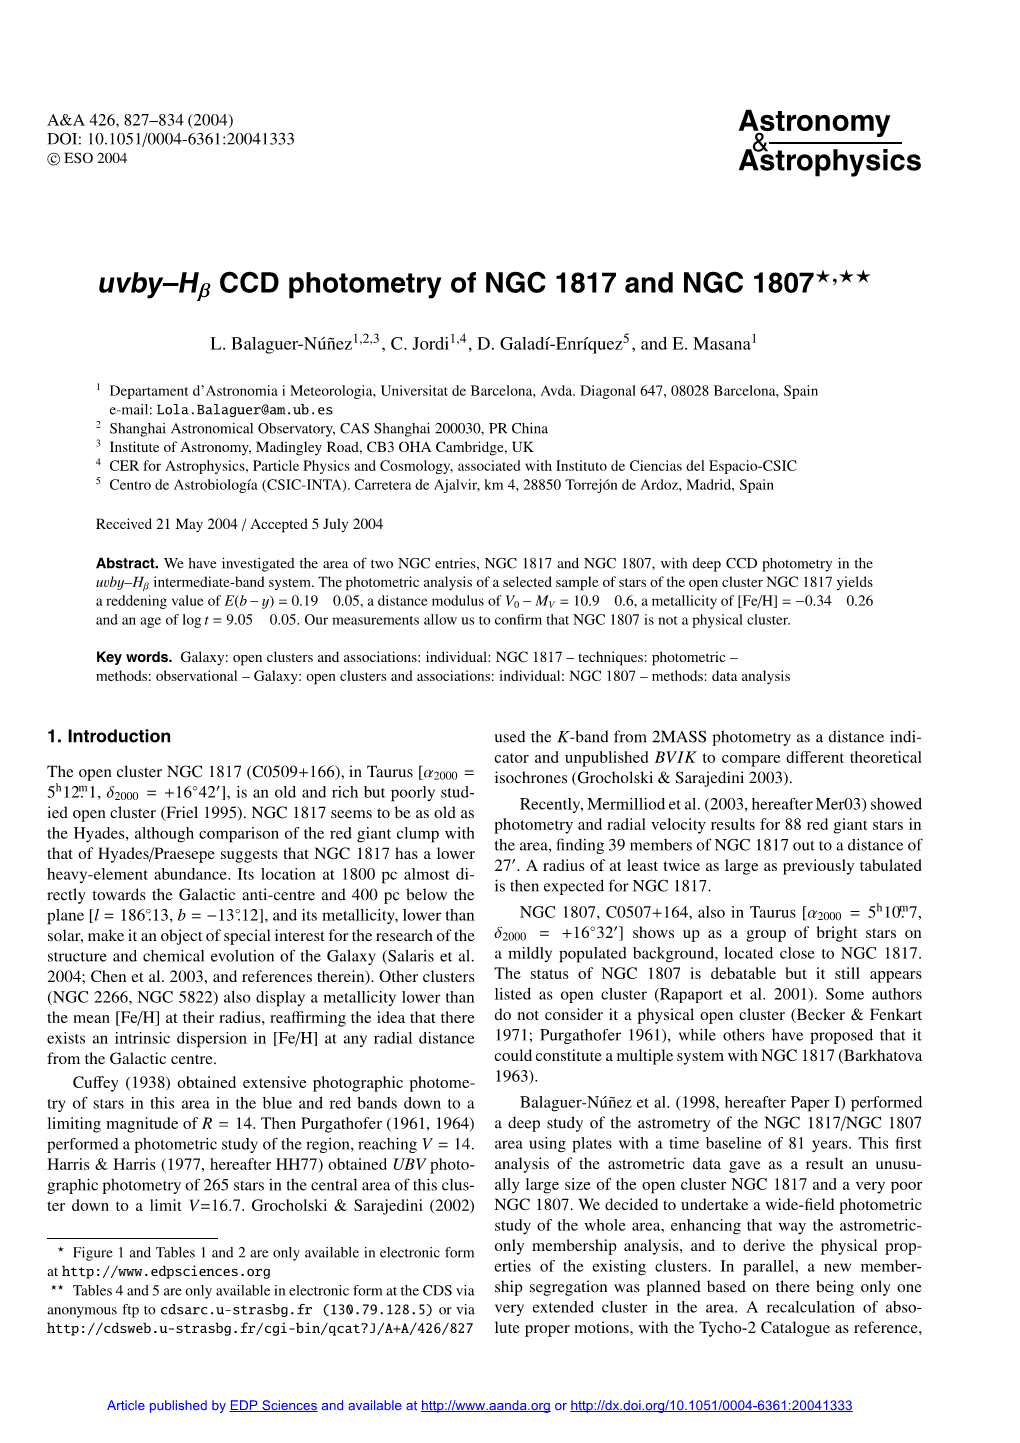 CCD Photometry of NGC 1817 and NGC 1807